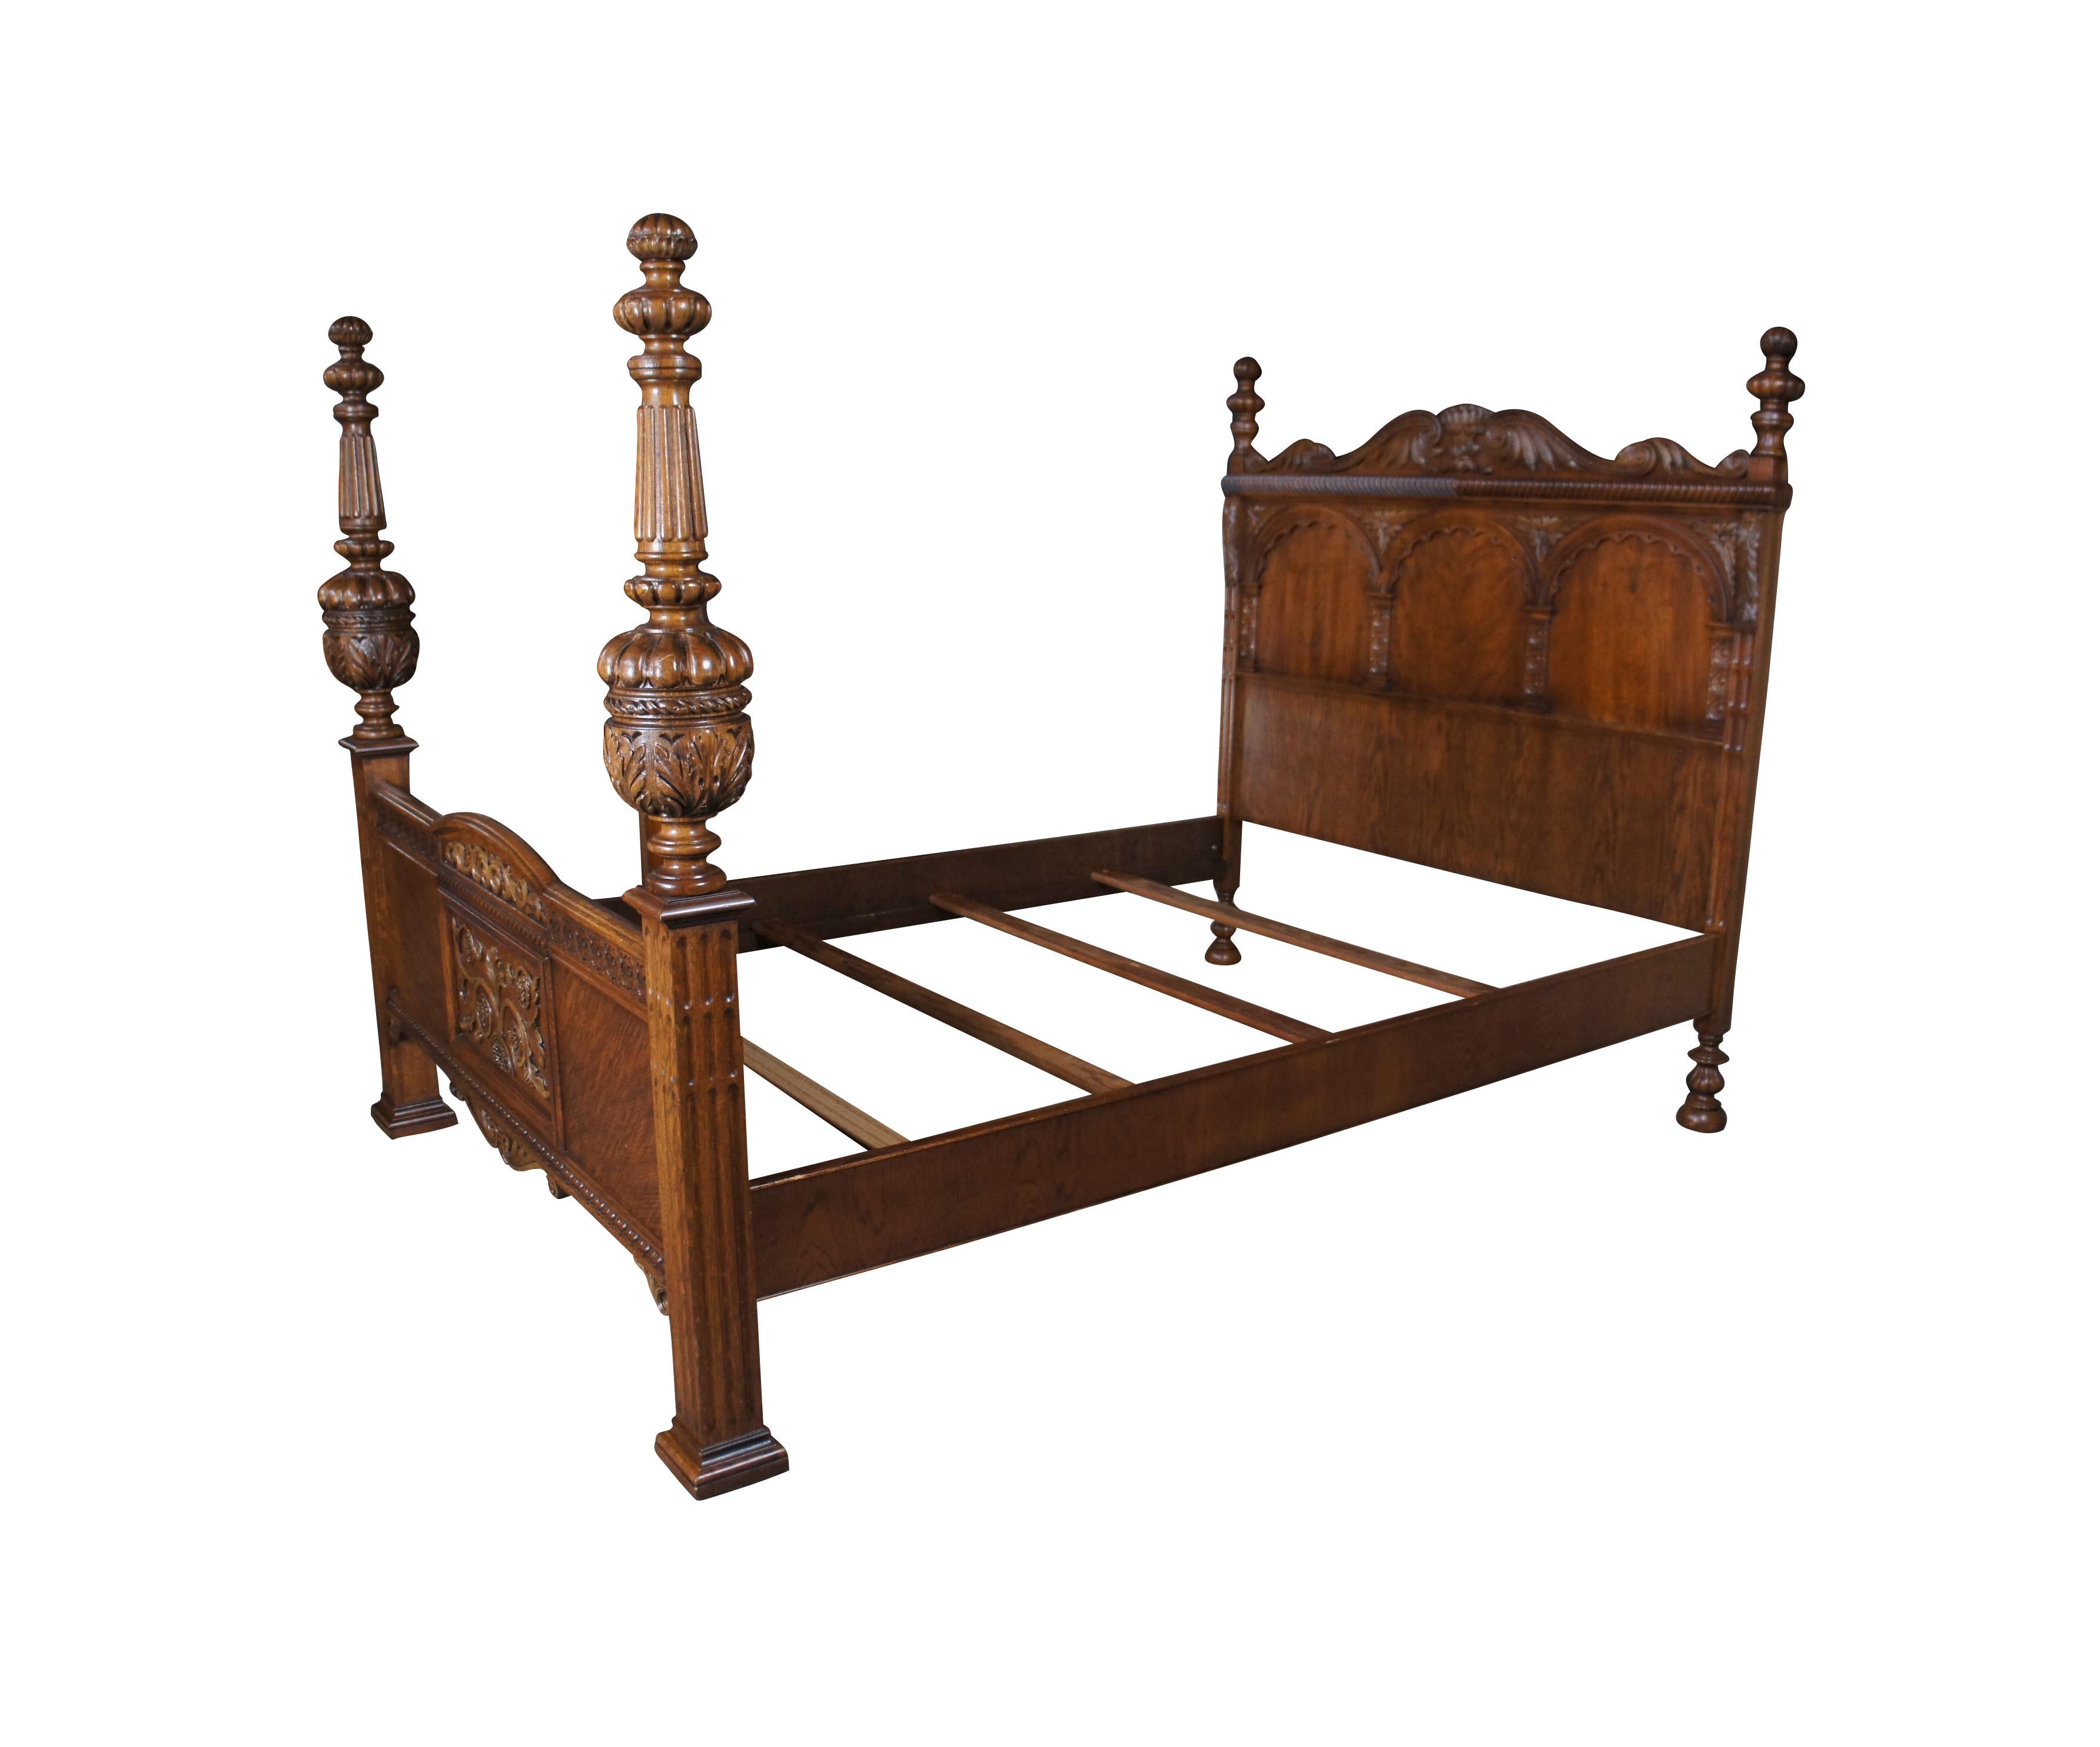 American Furniture Company Elizabethan oder Jacobean Revival Bett voller Größe Bett. Das Unternehmen, das seit 1899 in Batesville, Indiana, ansässig ist, arbeitete eng mit Romweber zusammen und kooperierte zum Teil mit ihm. Spezialisiert auf